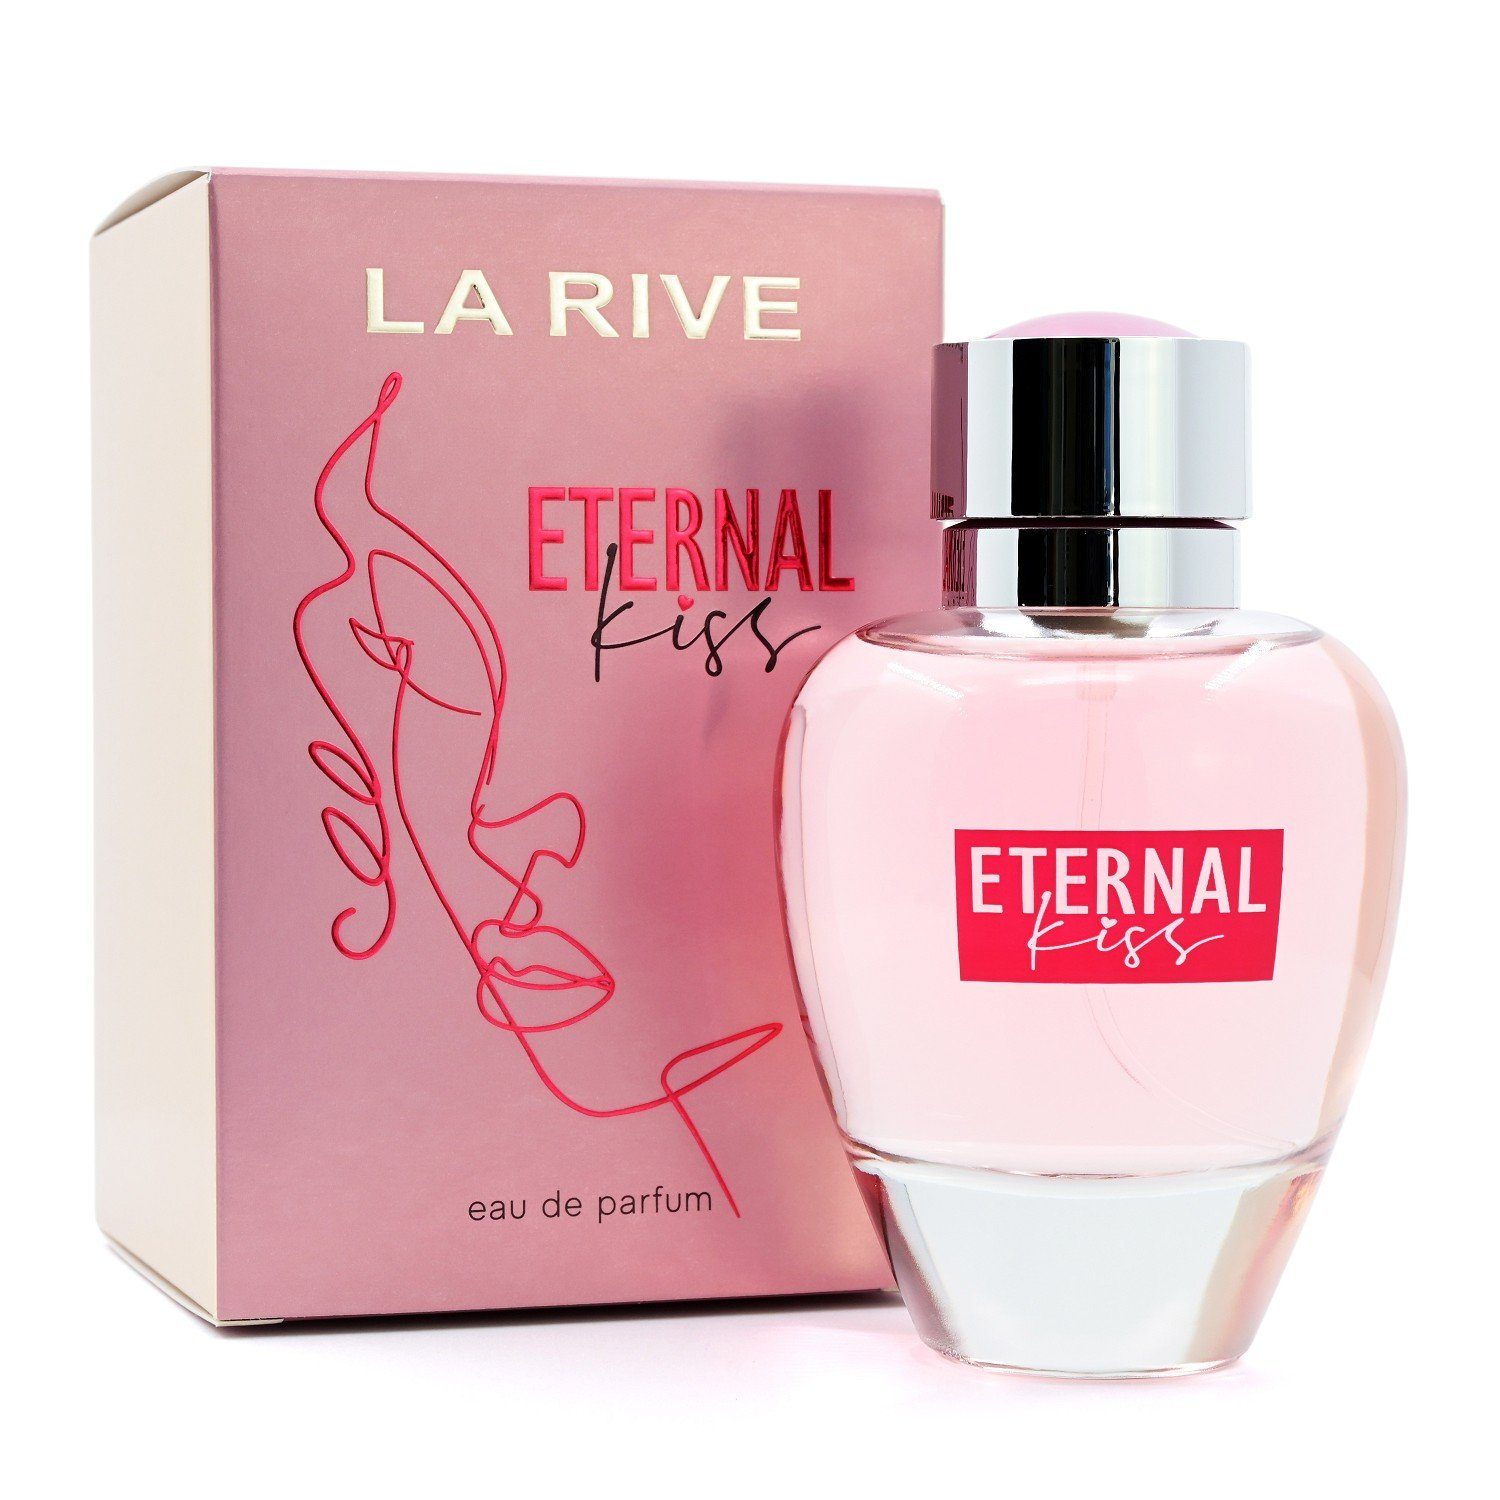 La Rive Eau de Parfum LA RIVE Eternal Kiss - Eau de Parfum - 90 ml